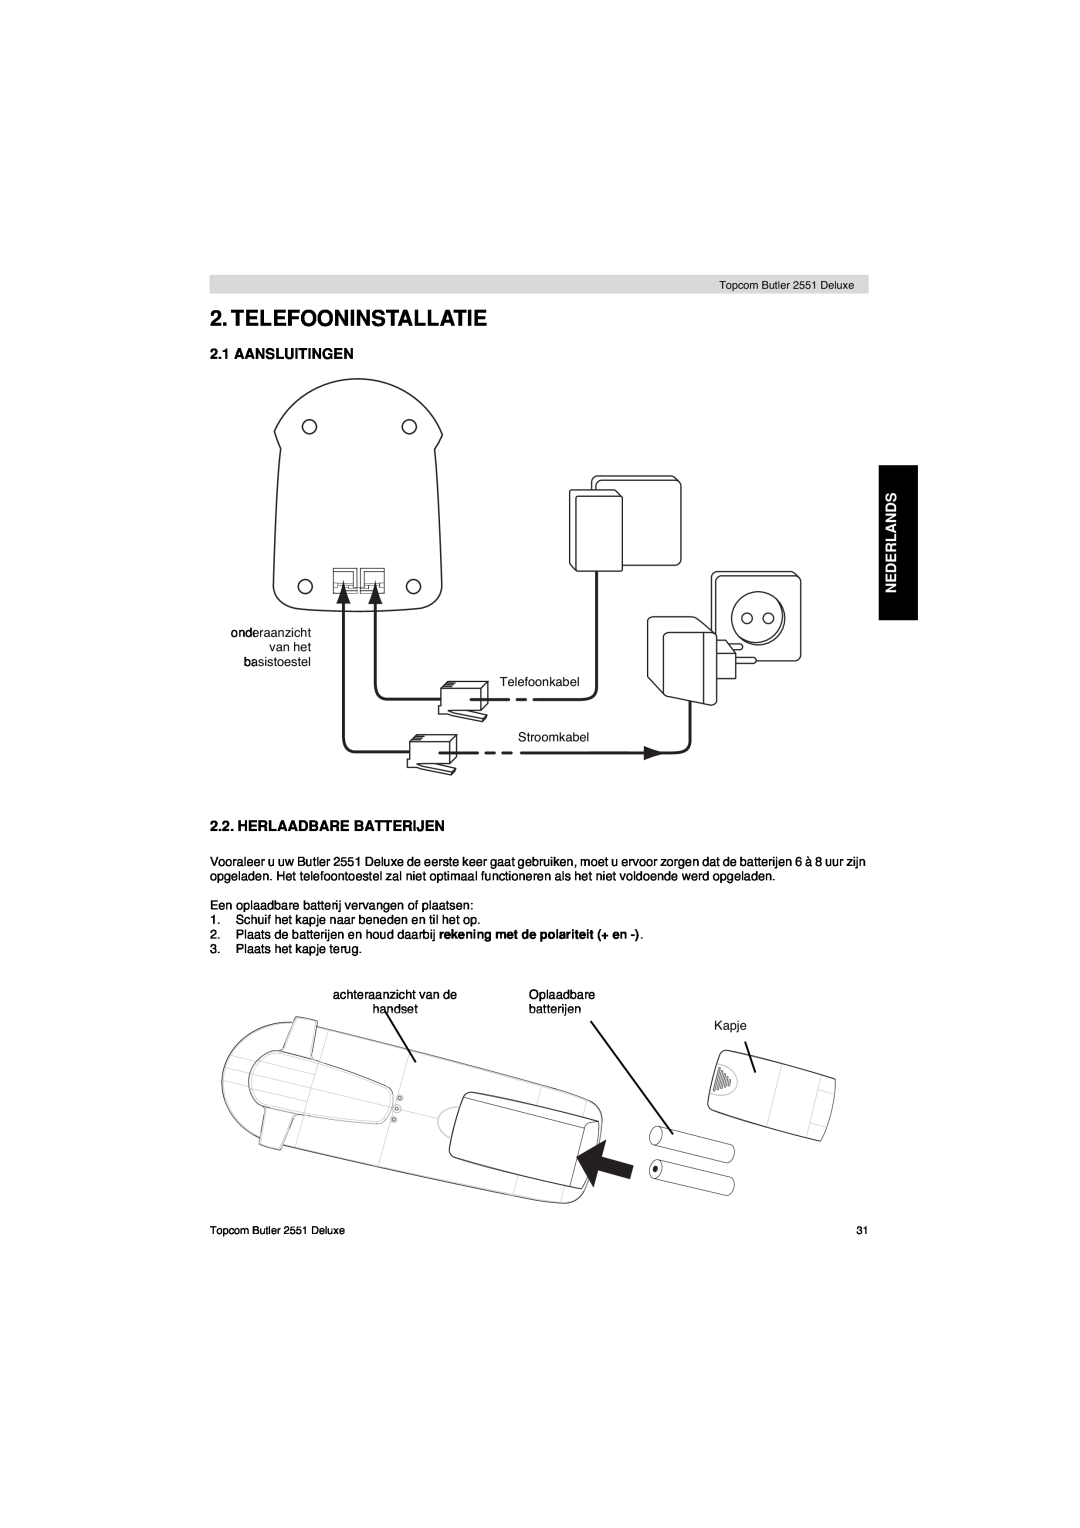 Topcom 2551 manual Telefooninstallatie, Aansluitingen, Herlaadbare Batterijen, Nederlands 